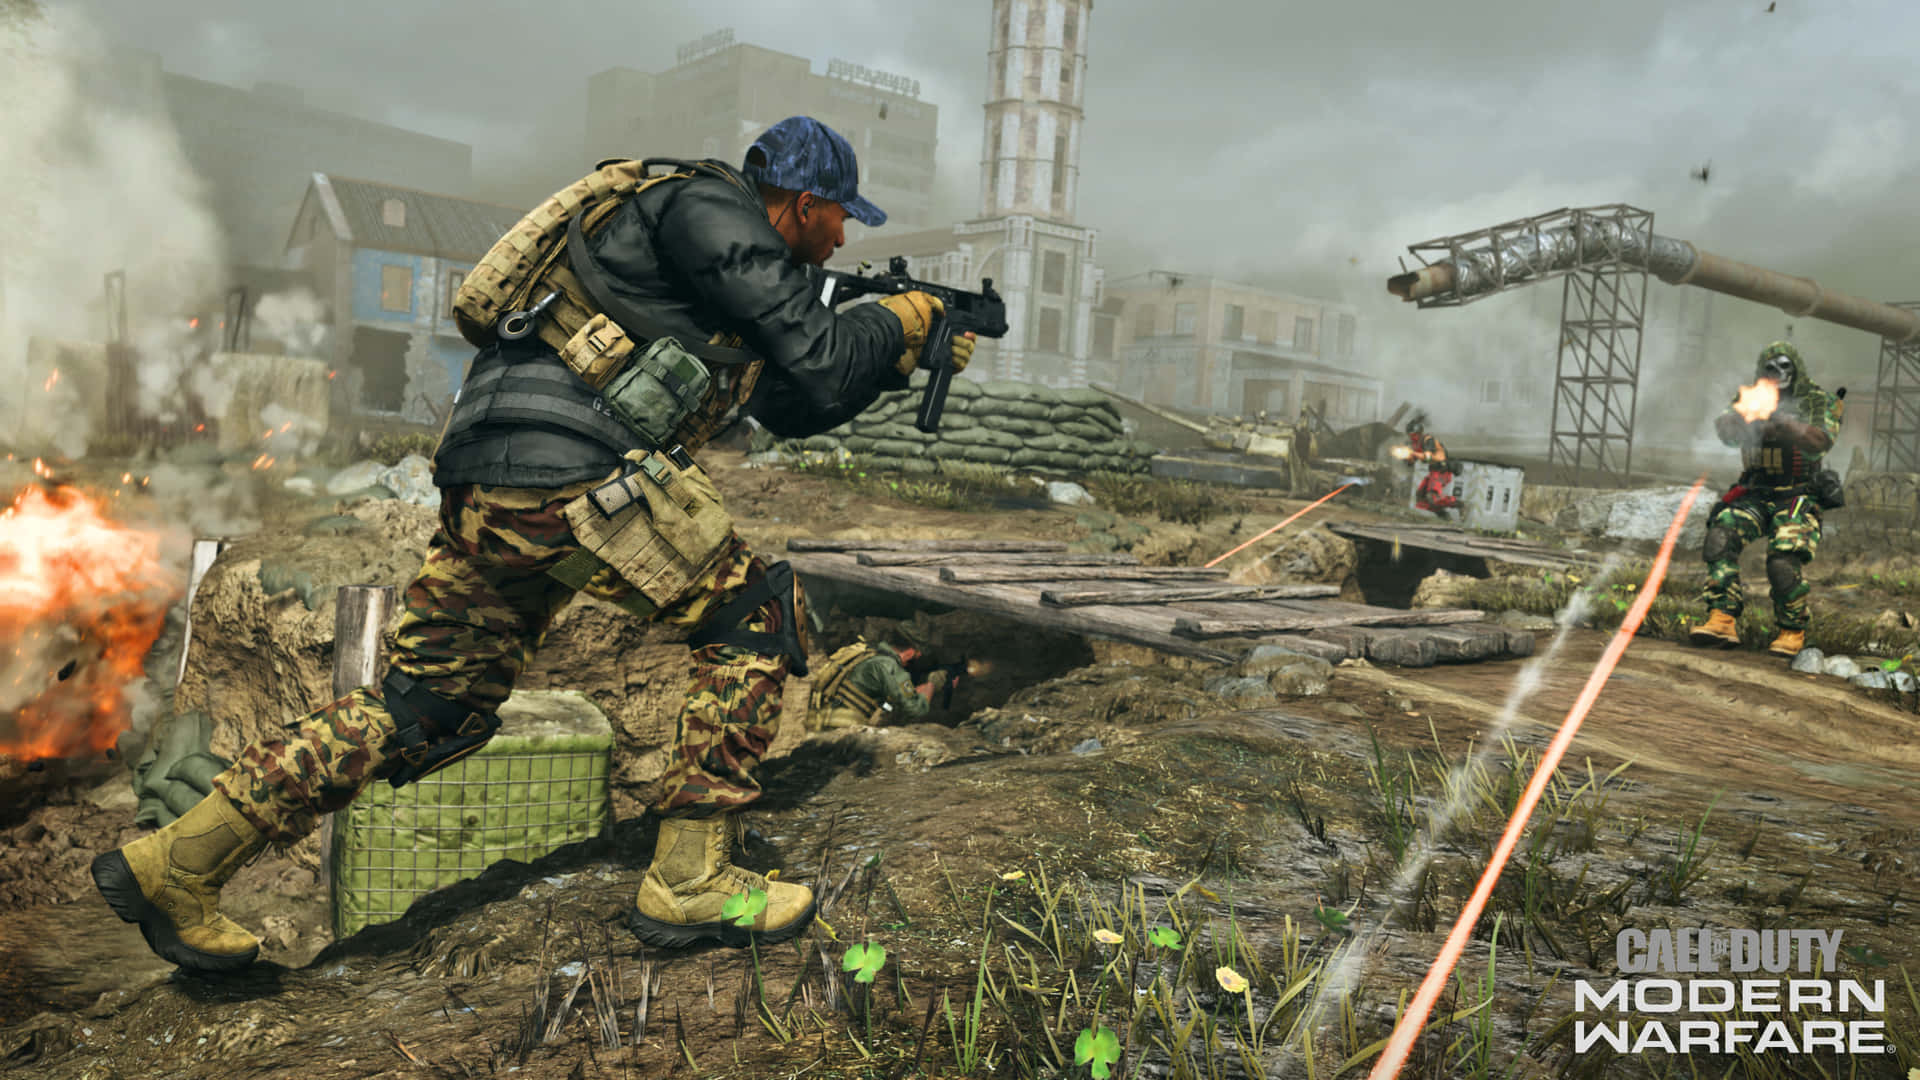 Engageradig I Intensiv Taktisk Krigföring Med Call Of Duty Modern Warfare.